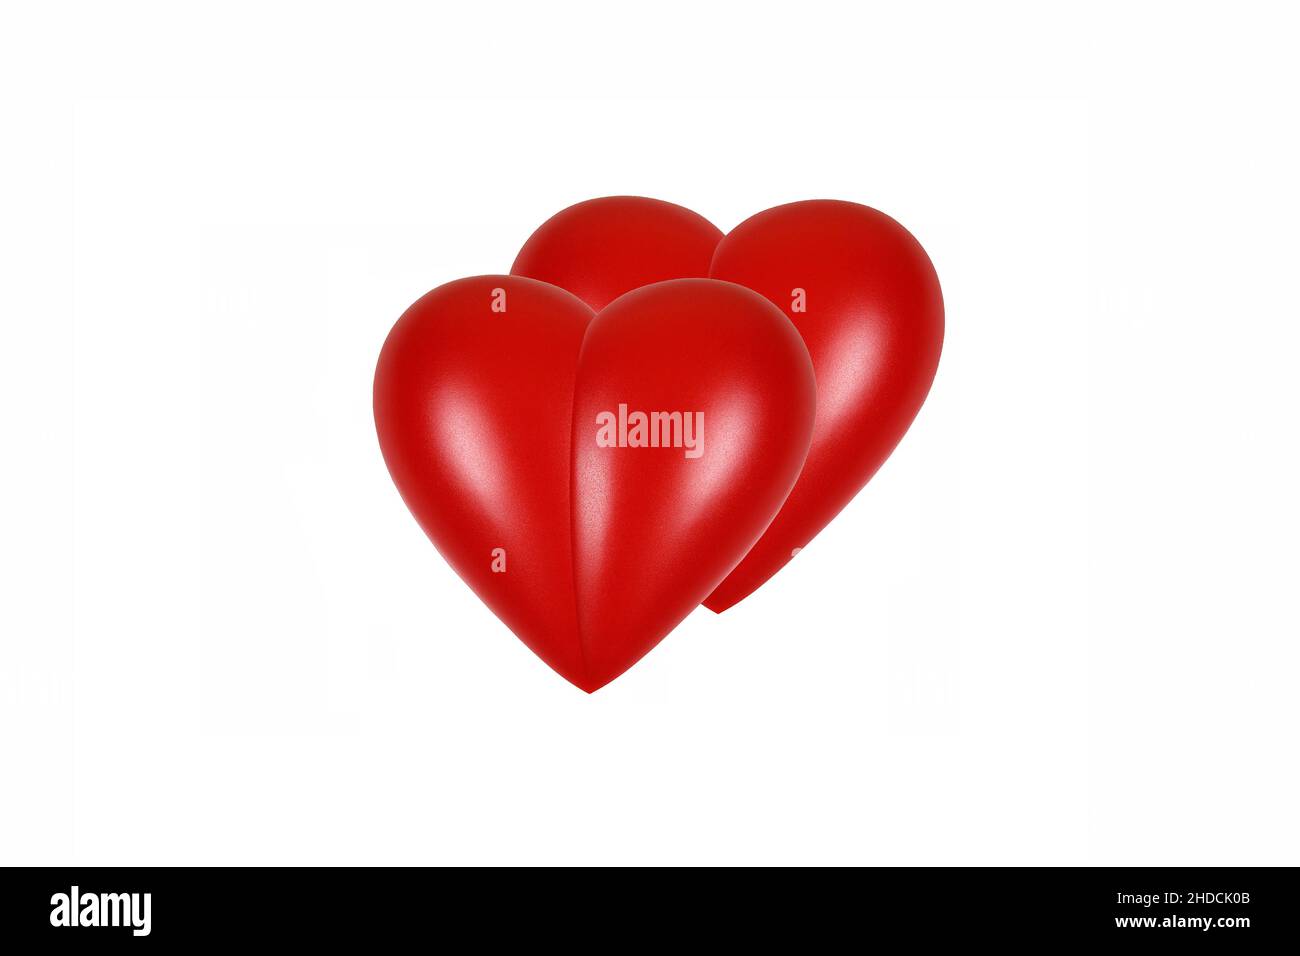 Rotes Herz, orgue, Gesundheit, Körperteil, Doppelherz, Liebe, partenariat, Zuneigung, Banque D'Images